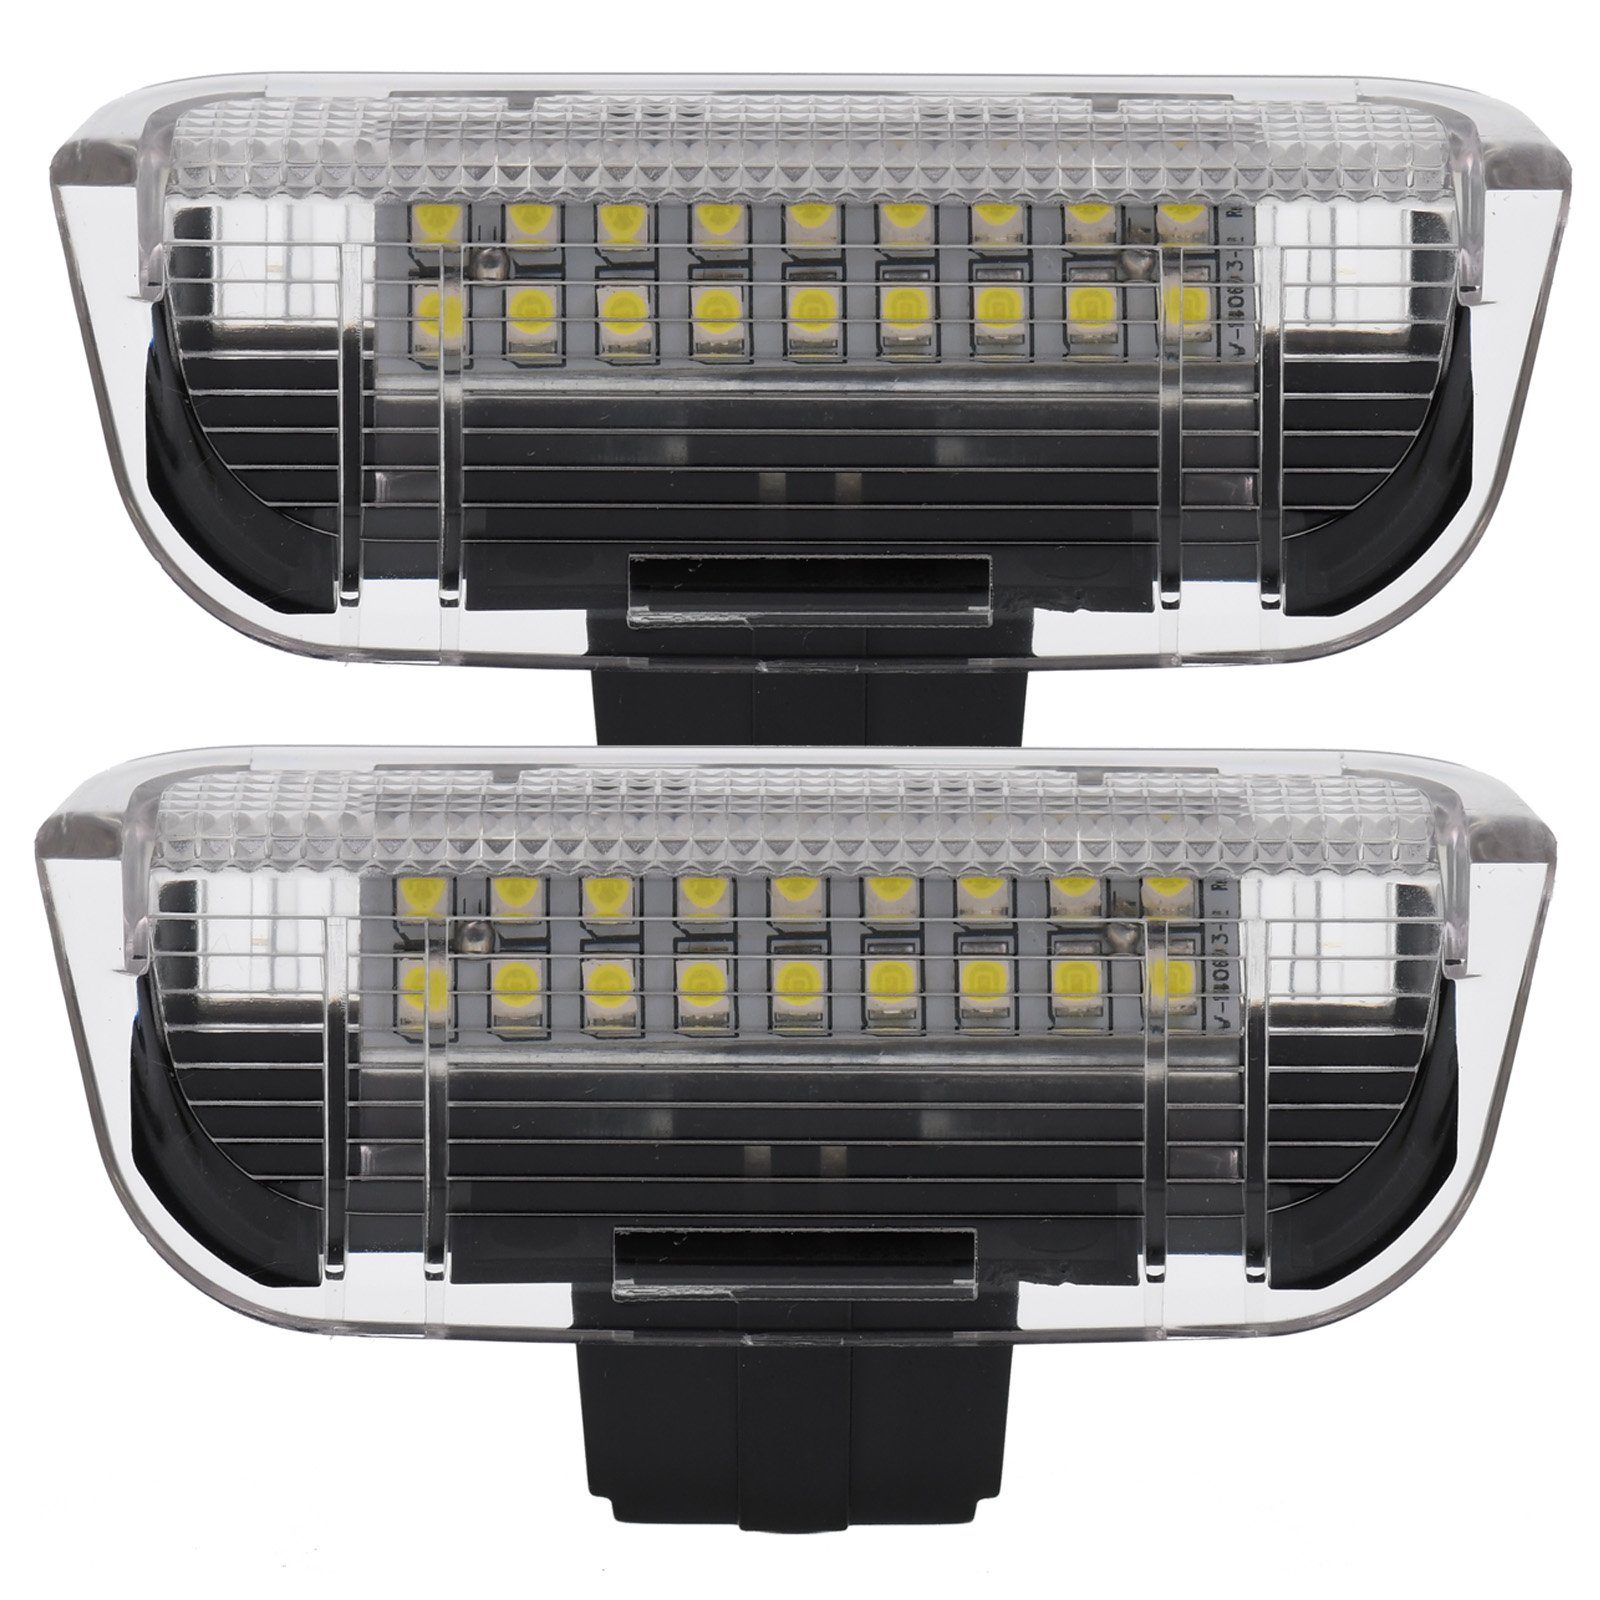 Sharan JETTA für Touareg Vinstar VW, KFZ-Ersatzleuchte VW Passat Tiguan kompatibel EOS 1F Golf LED mit: Einstiegsbeleuchtung